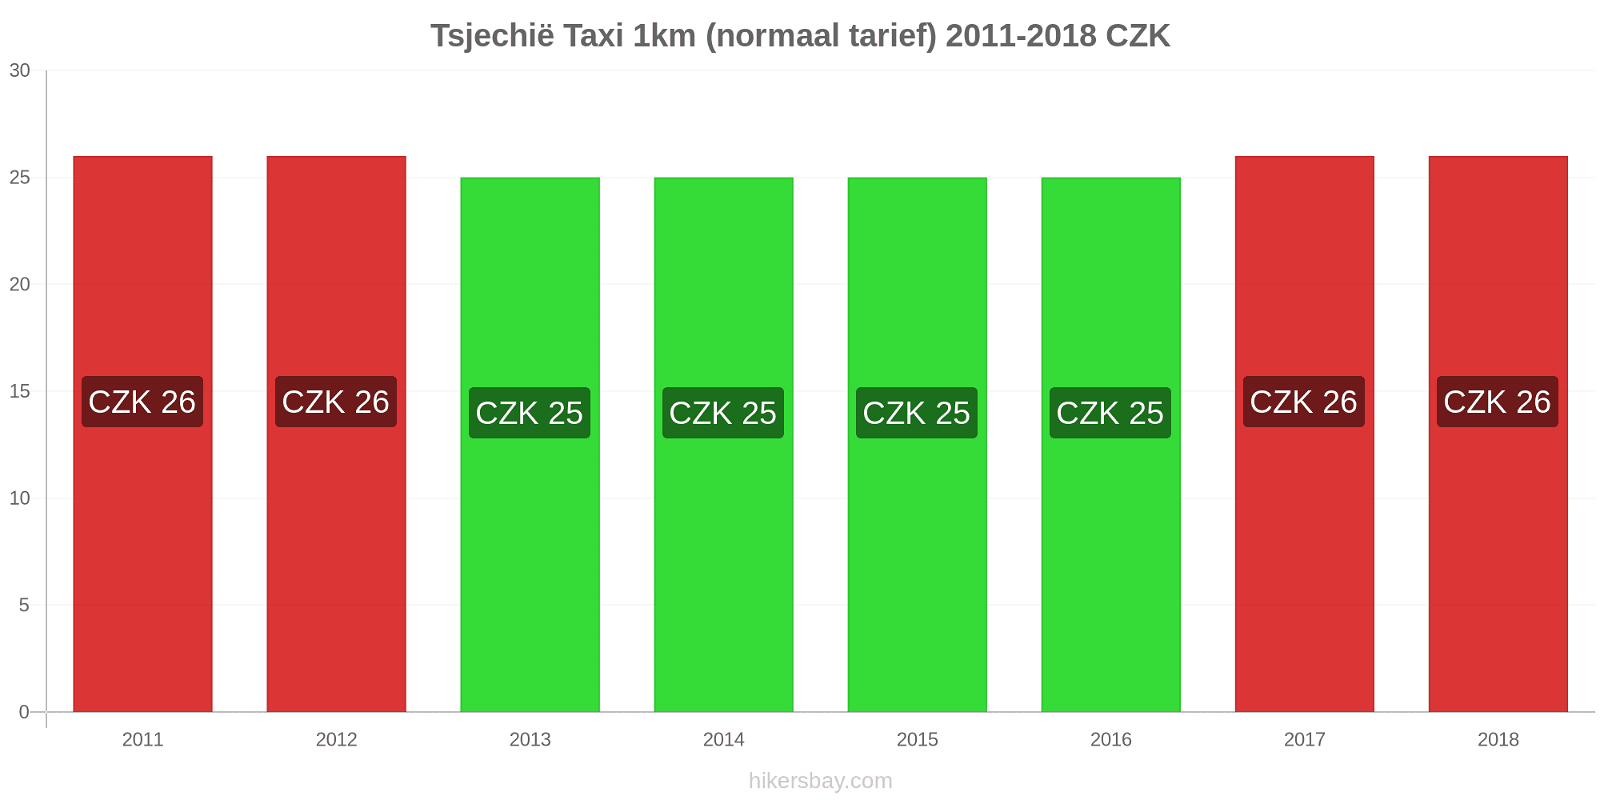 Tsjechië prijswijzigingen Taxi 1km (normaal tarief) hikersbay.com